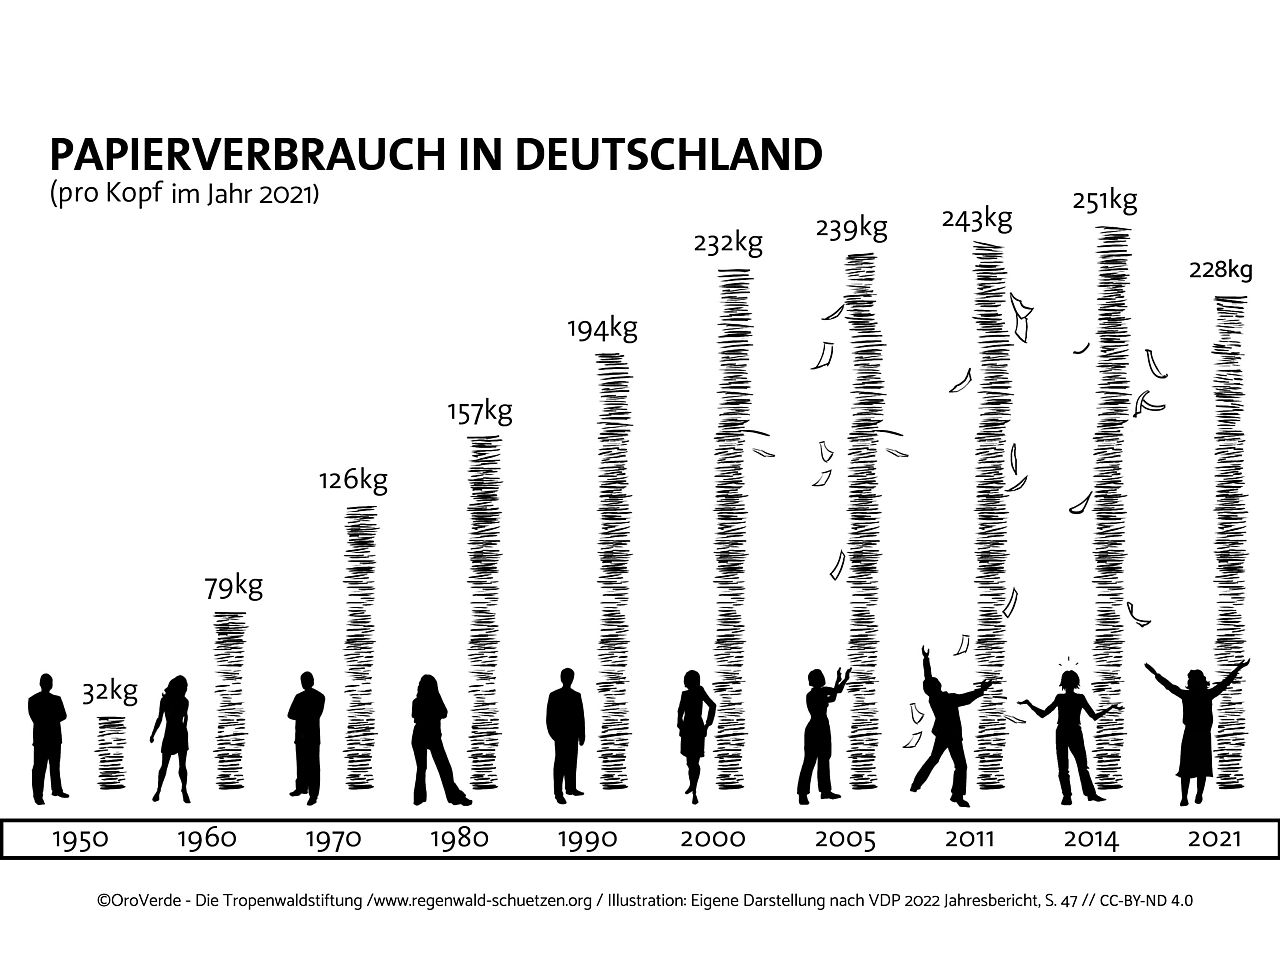 Papierverbrauch pro Kopf in Deutschland seit 1950